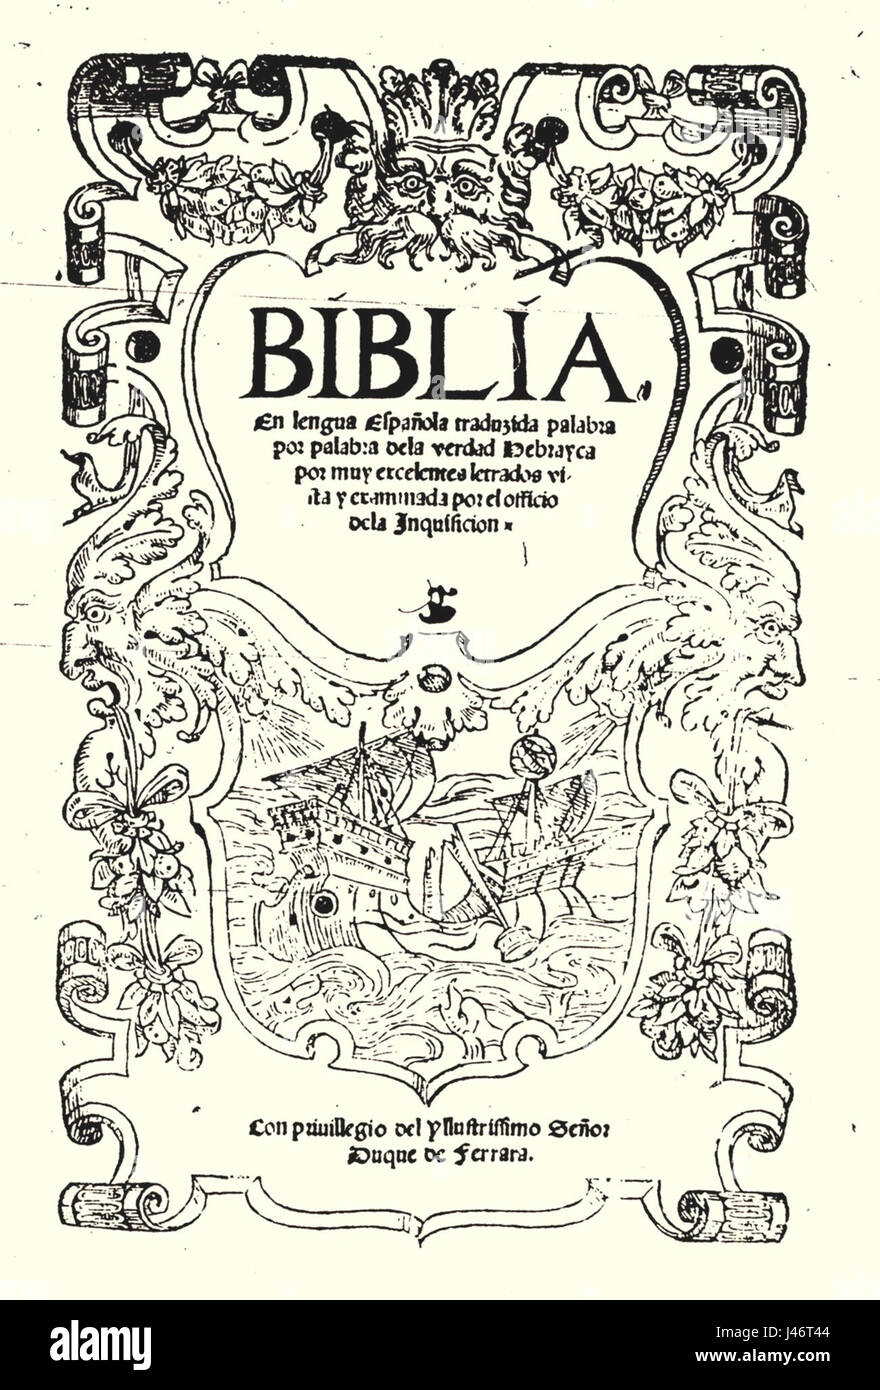 Pagina inicial de la biblia de Ferrara Banque D'Images